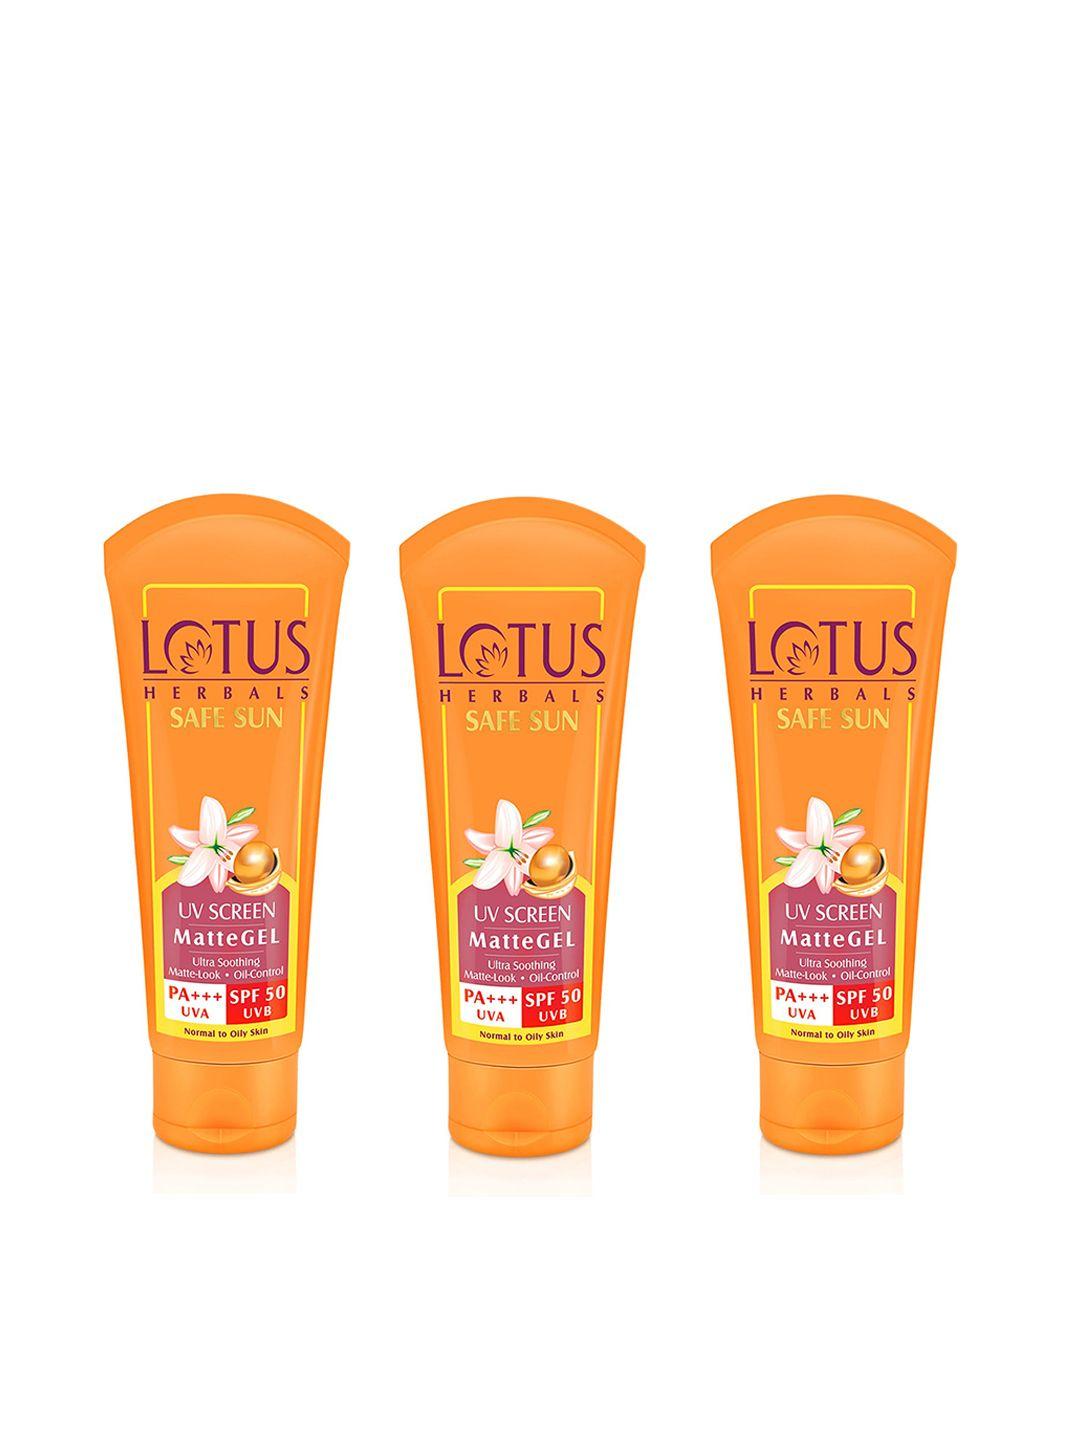 Lotus Herbals Set of 3 Safe Sun UV Screen Matte Gel SPF 50 PA+++ Sunscreen - 50g Each